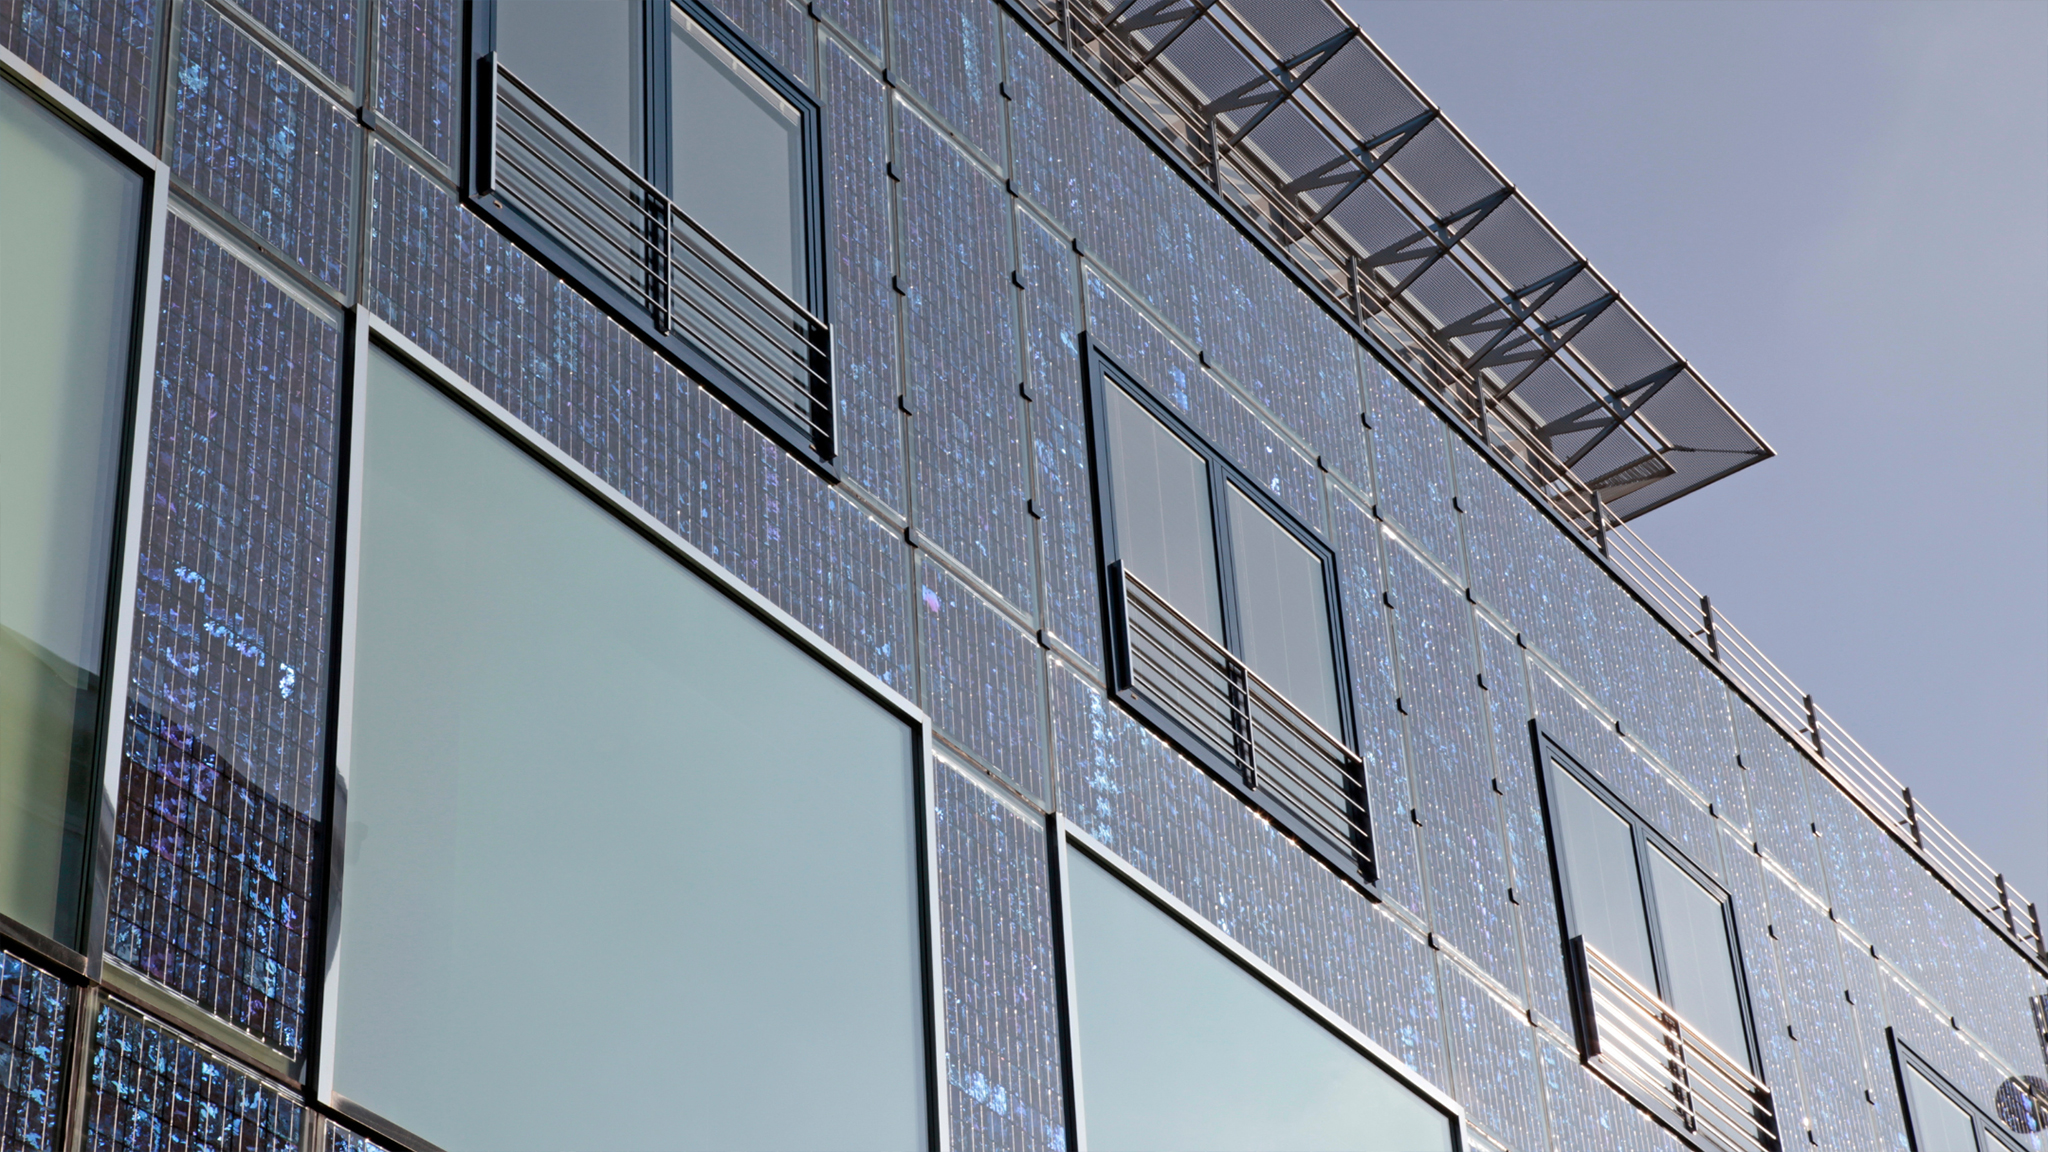 Architektonisch integrierte Solarfassade an einem Holzhaus